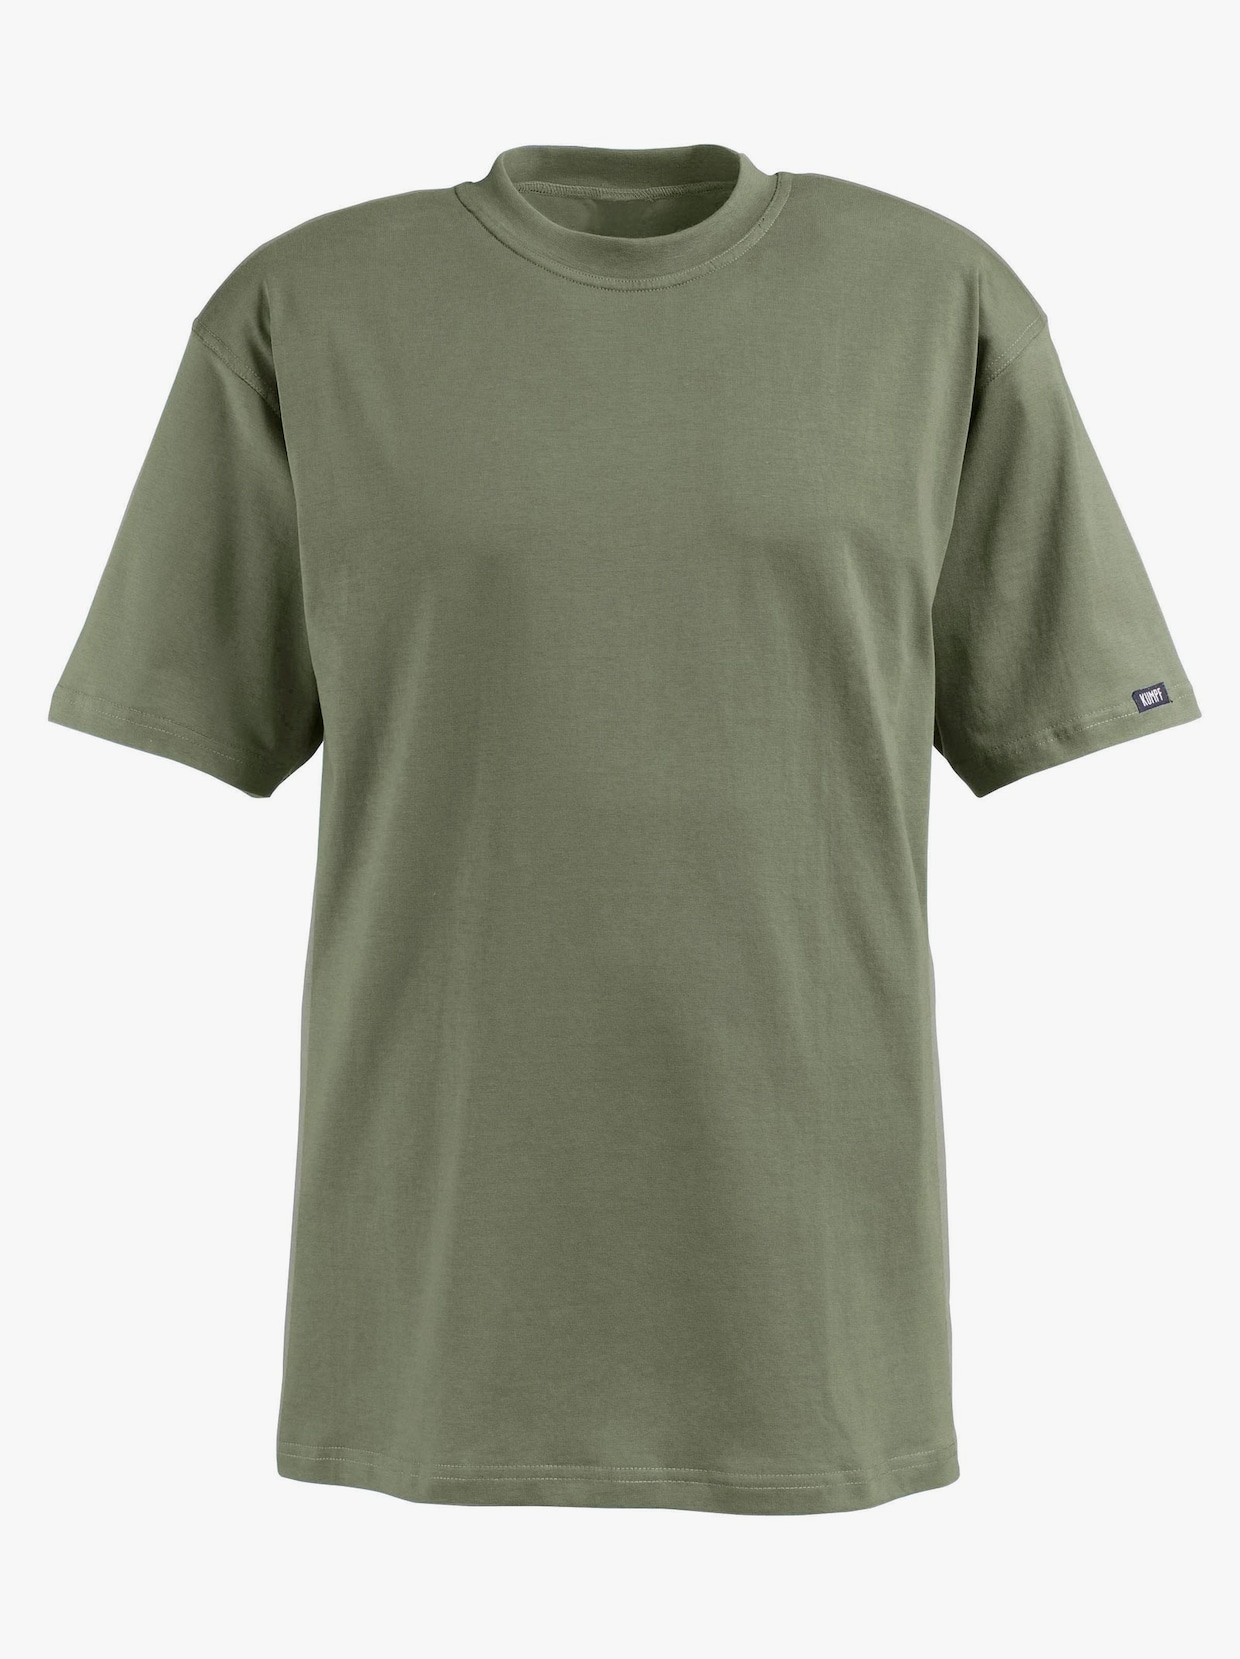 Kumpf Shirt - weiss + khaki